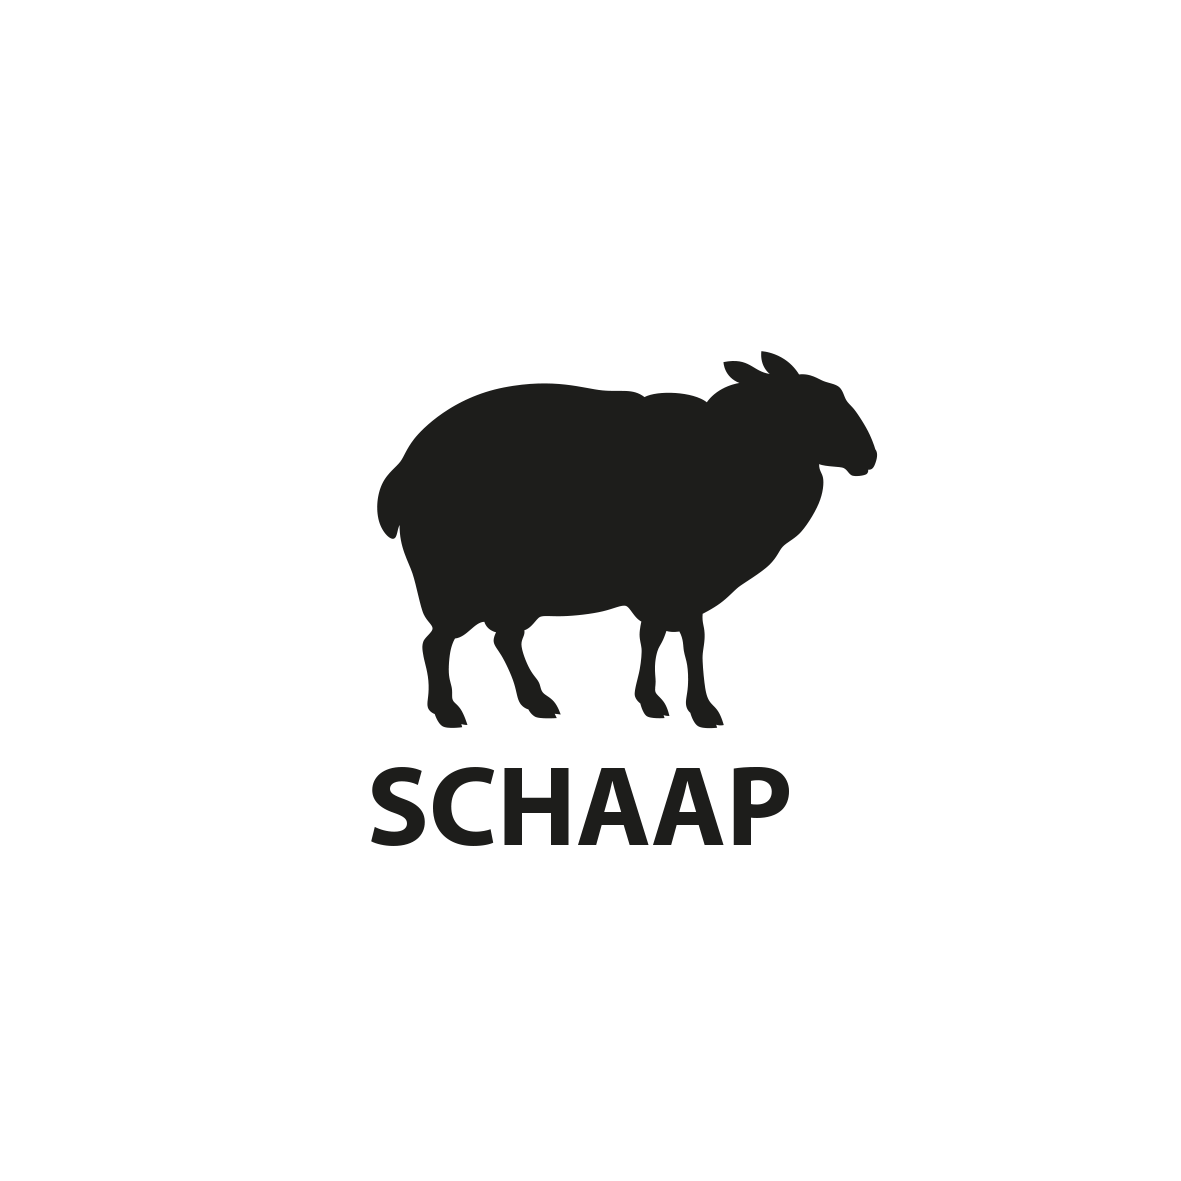 schaap